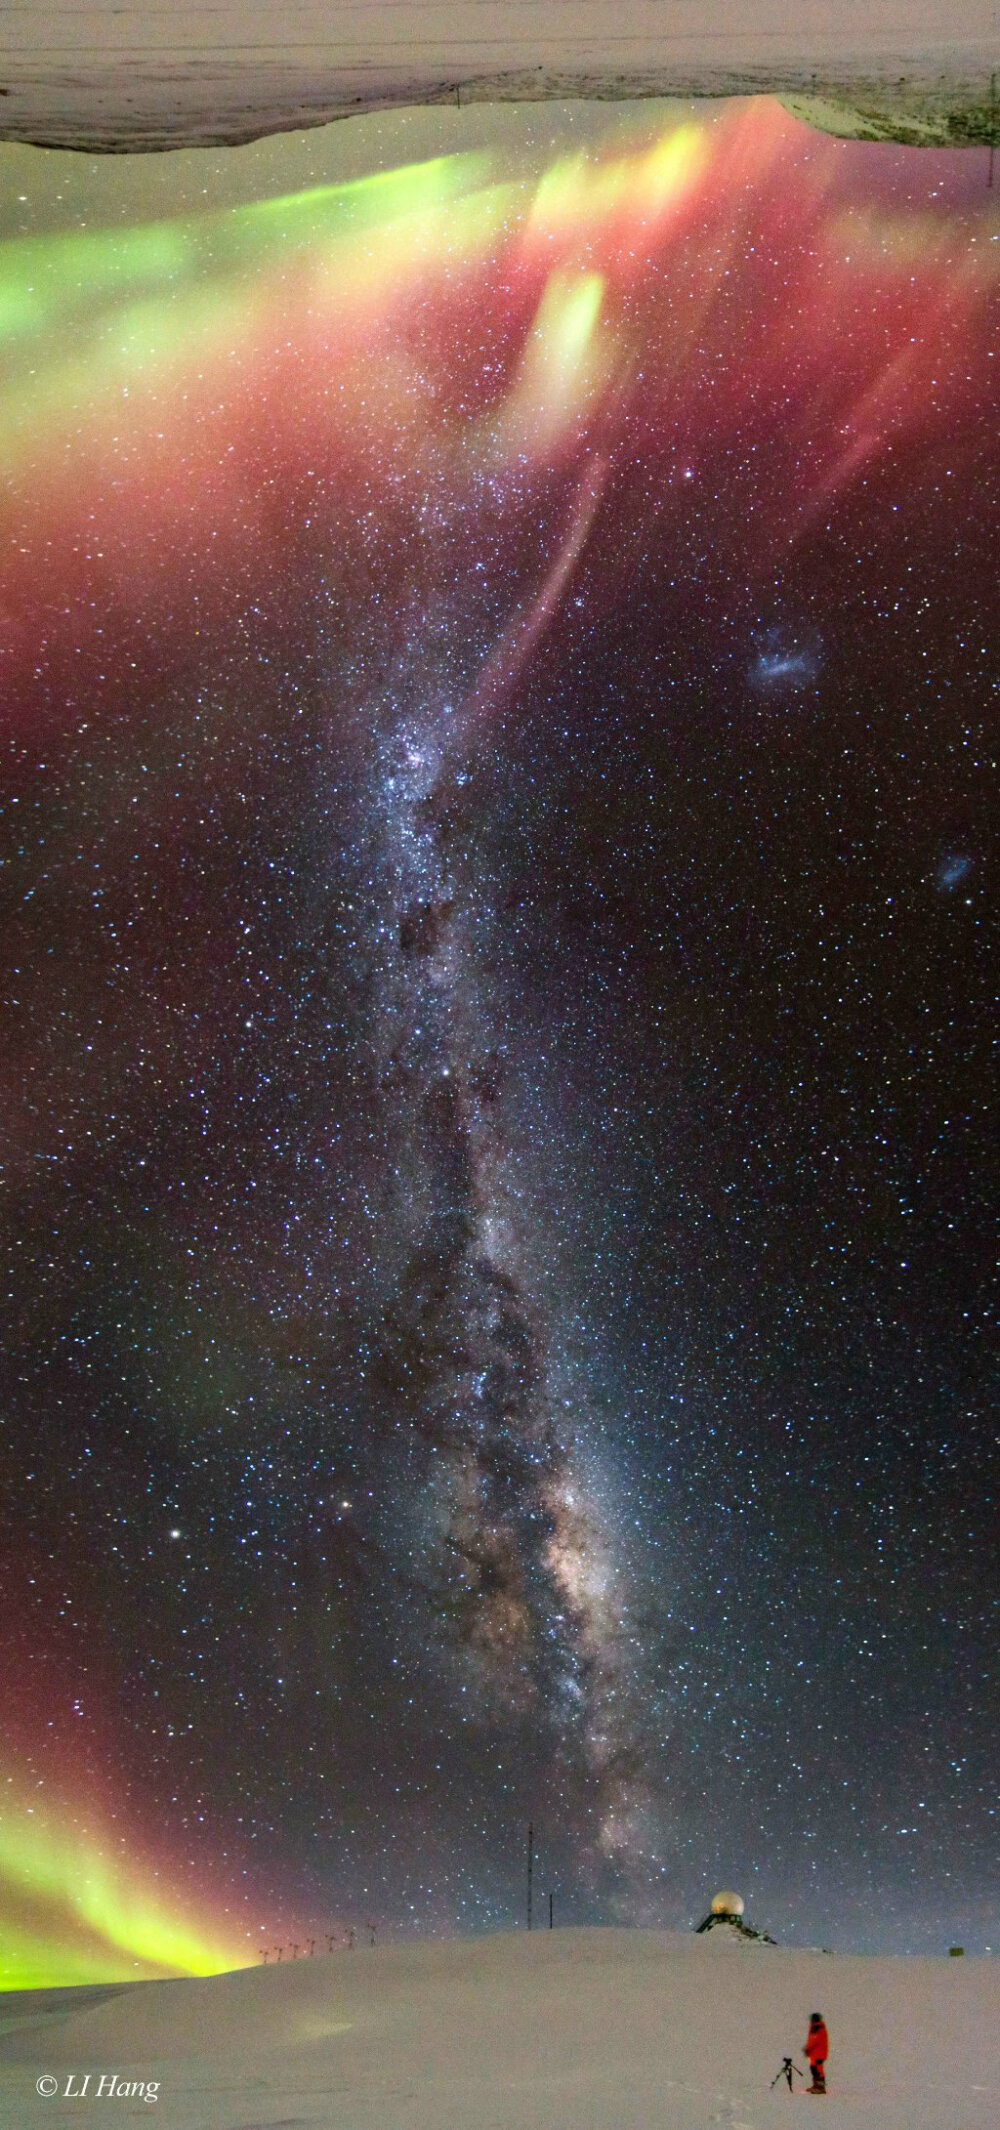 南极洲上空的银河与极光,7月中旬由中国南极科考队员@李航